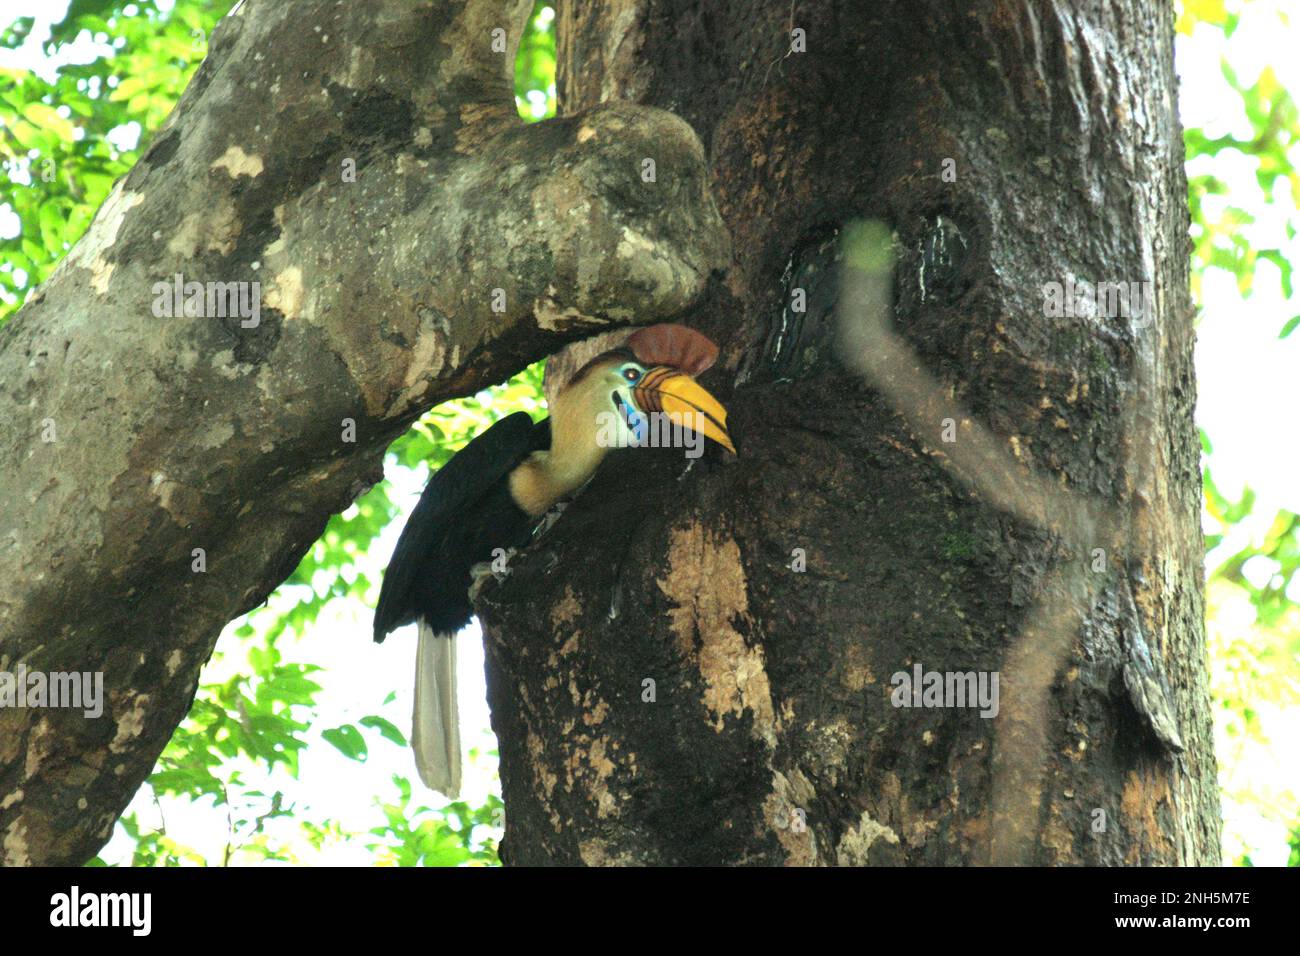 Un maschio knobbed hornbill, o a volte chiamato Sulawesi rugged hornbill (Rhyticeros cassidix), alimenta un pulcino che sta aspettando all'interno di un nido, attraverso una crepa su un albero nella riserva naturale di Tangkoko, Sulawesi settentrionale, Indonesia. La specie è attualmente considerata vulnerabile all'estinzione a causa del disboscamento e della caccia, secondo Amanda Hackett della Wildlife Conservation Society in una pubblicazione del 2022. "Con gli alberi che diminuiscono, non ci sono luoghi sicuri per coppie di oroscafi per costruire i loro nidi in grandi alberi maturi", ha aggiunto. Foto Stock